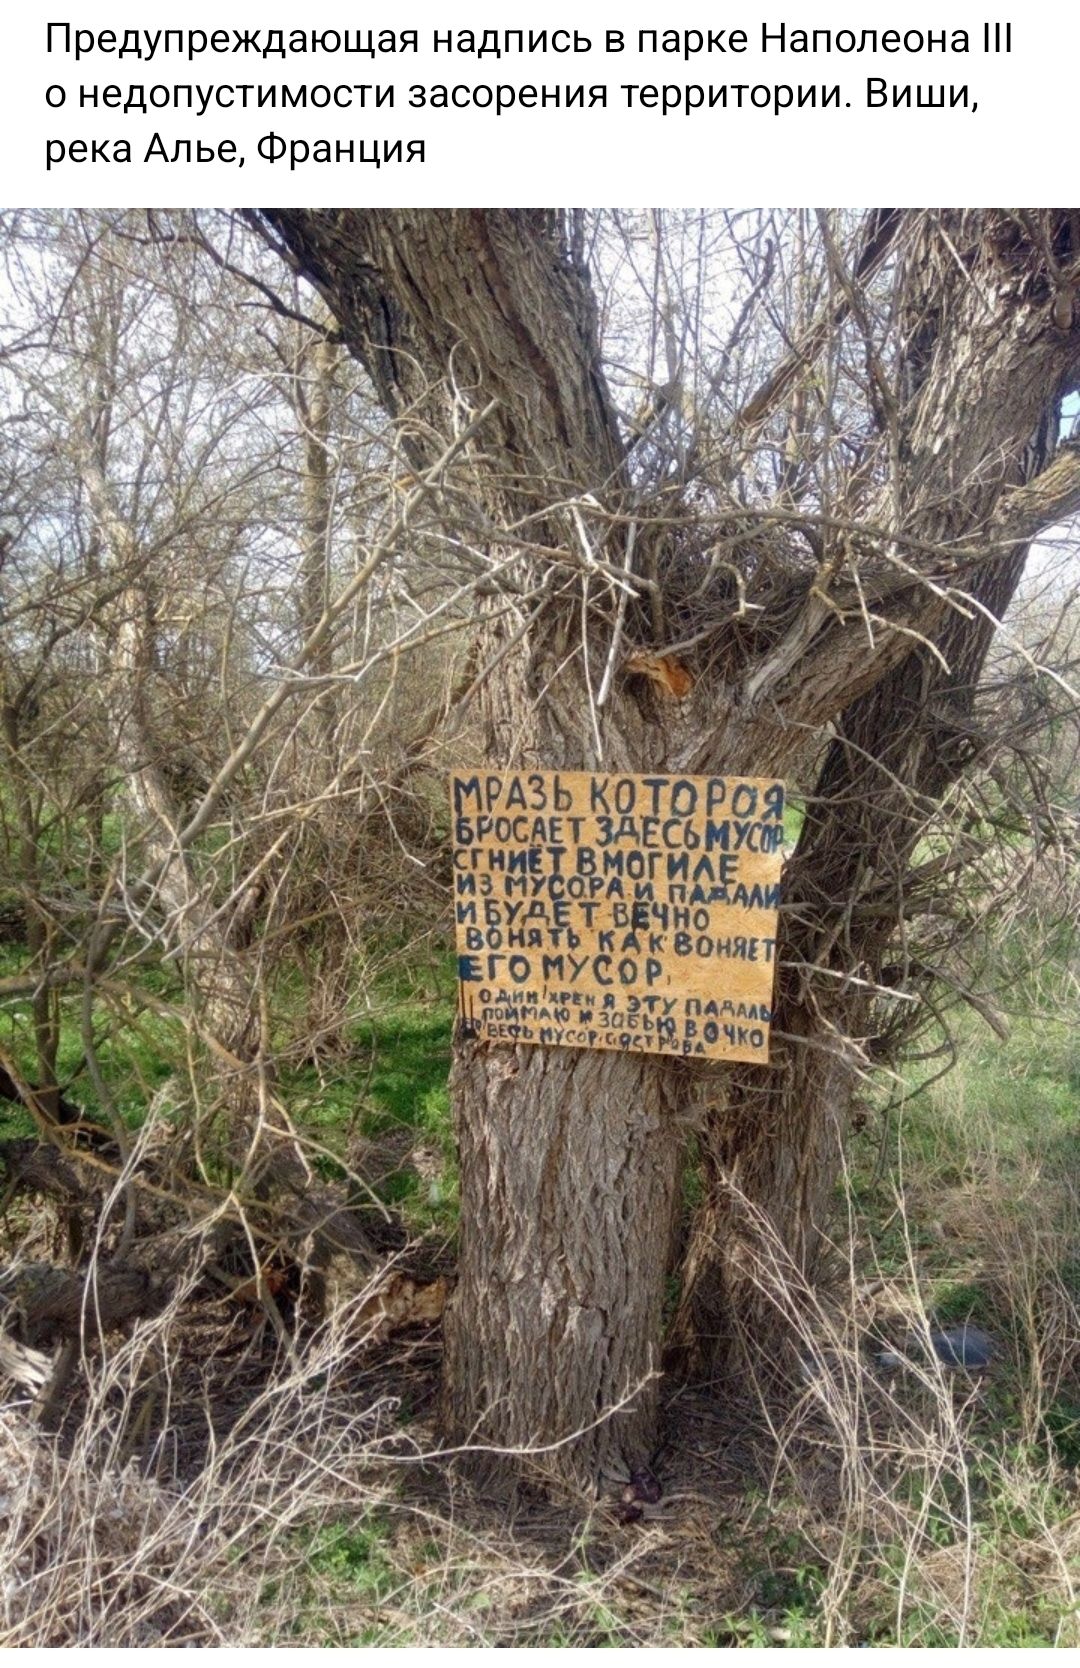 Предупреждающая надпись в парке Наполеона недопустимости засорения территории Биши река Апье Франция